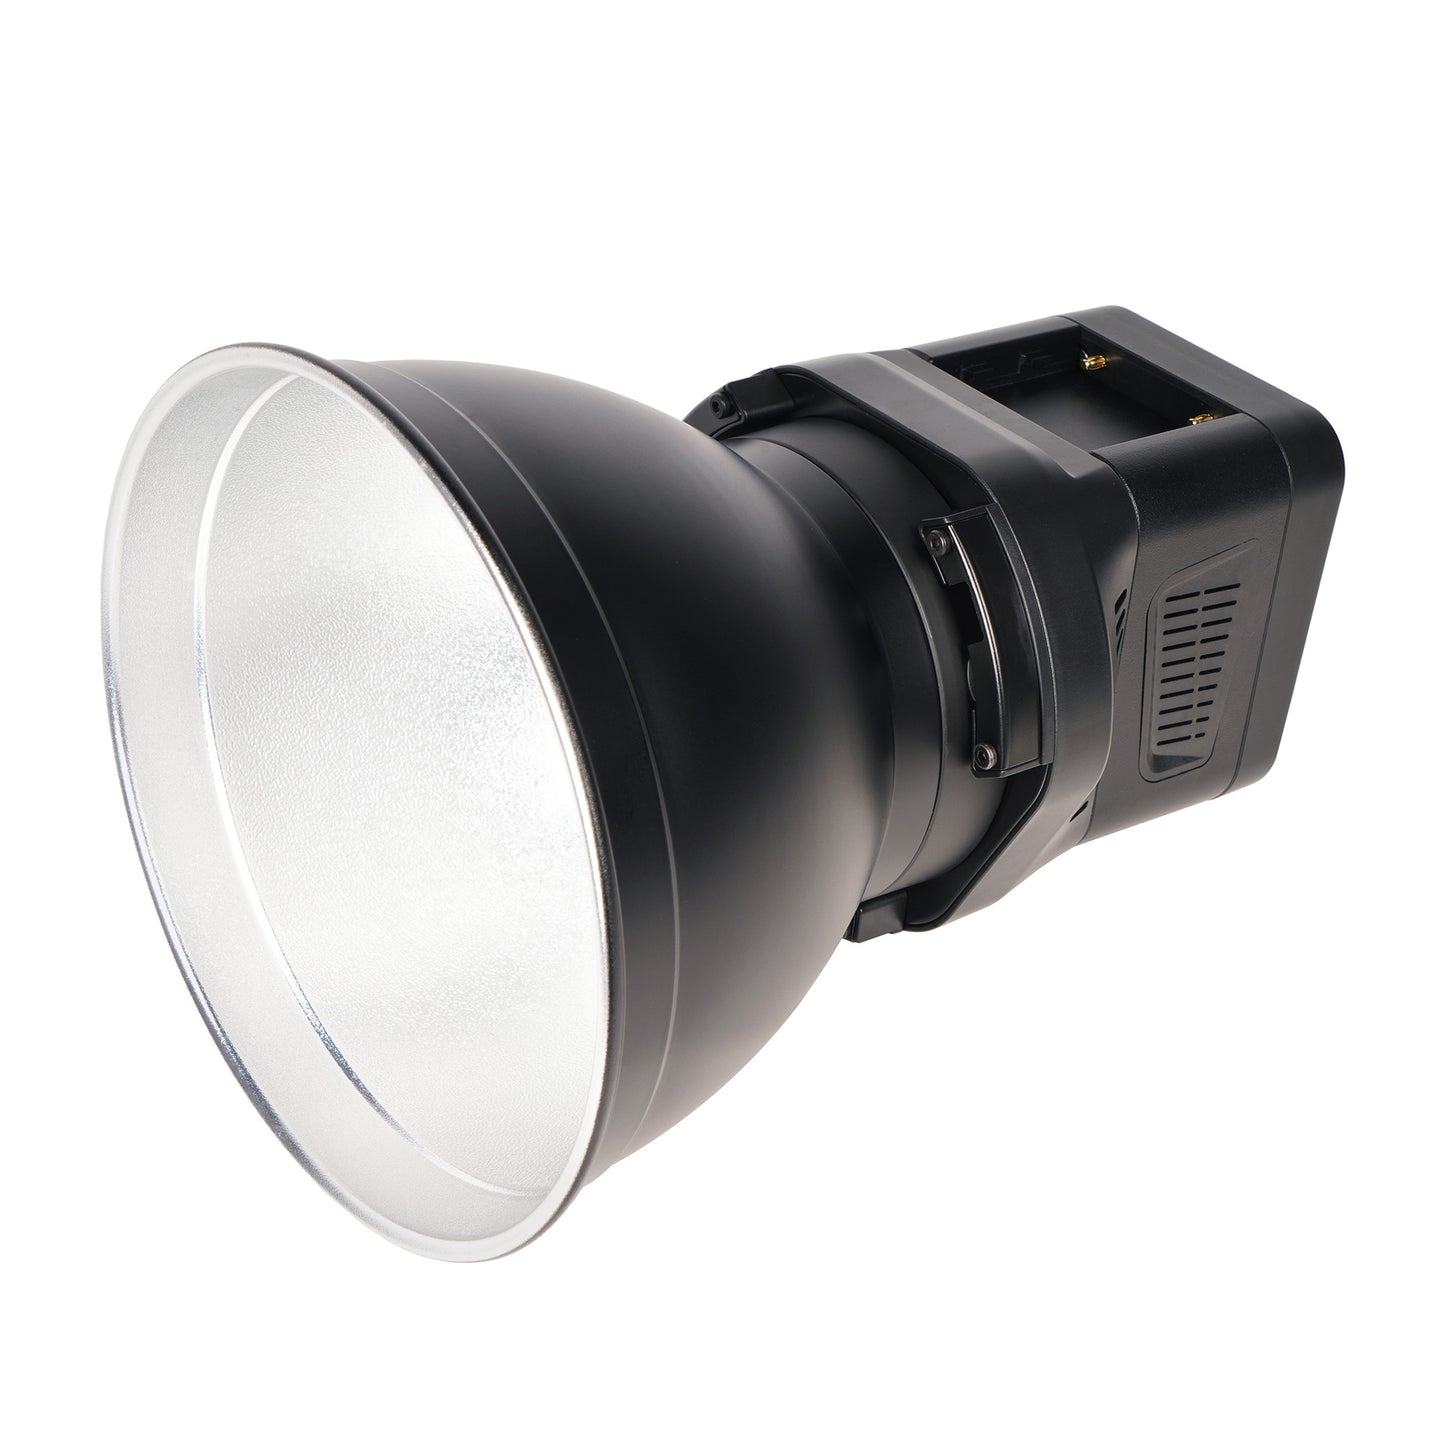 SIRUI C60B LED-Dauerlicht Bi-Color 60W - superleise 20dB - Foto- + Videoleuchte